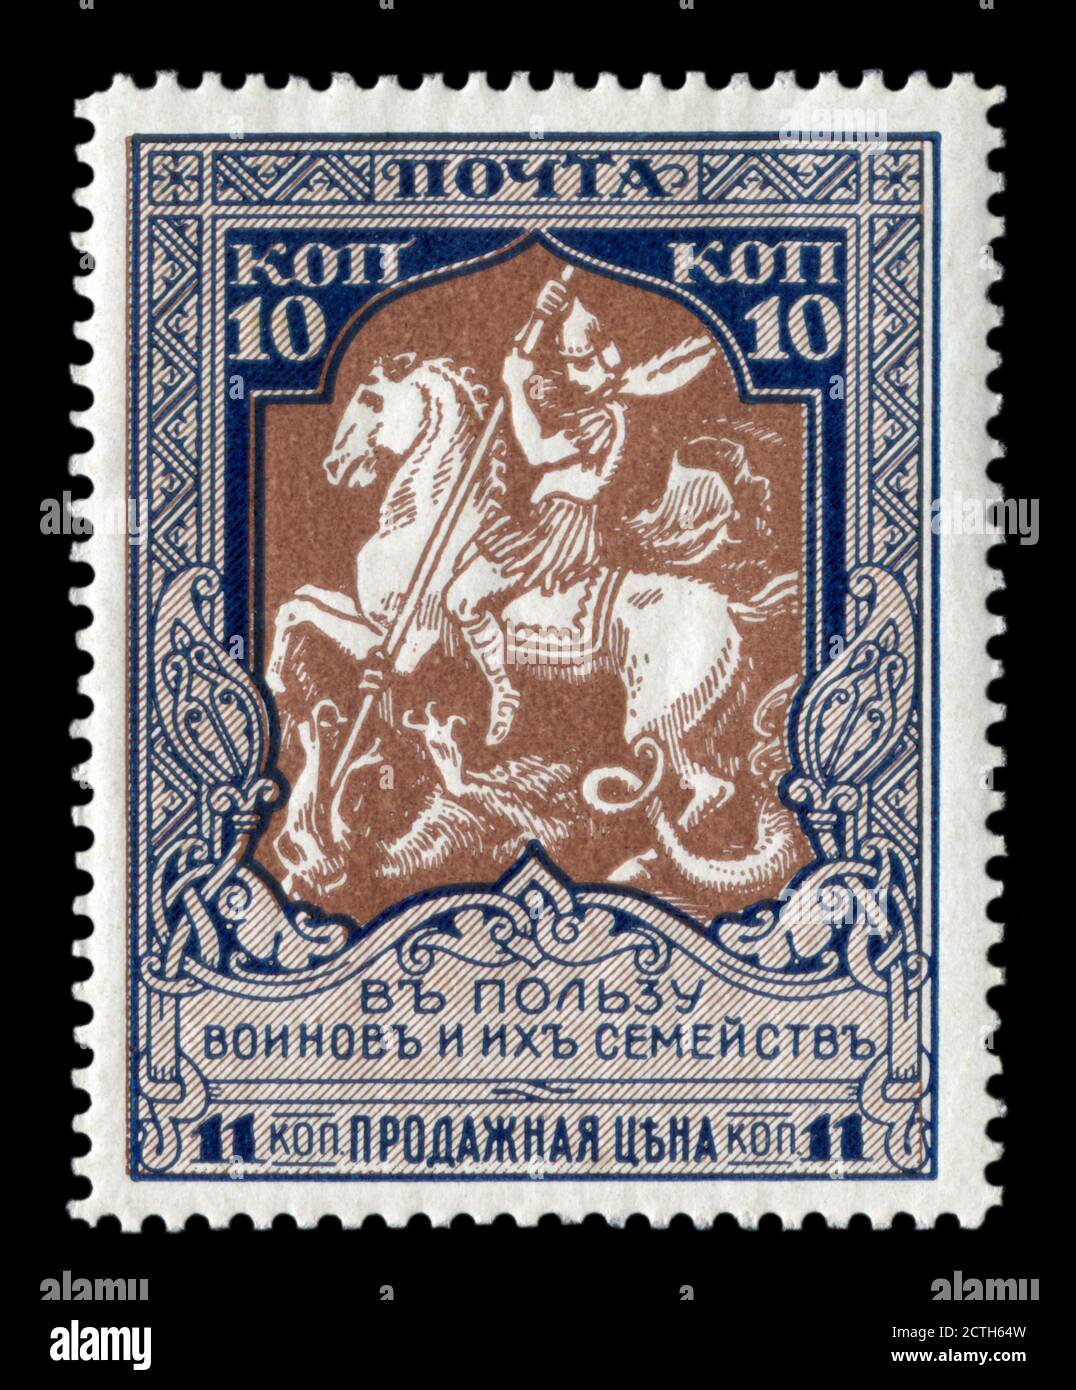 Timbre de charité postale historique russe : Saint George tuant le Dragon, il symbolise une victoire sur l'Allemagne, dix kopecks, Empire russe, 1914-1915 Banque D'Images